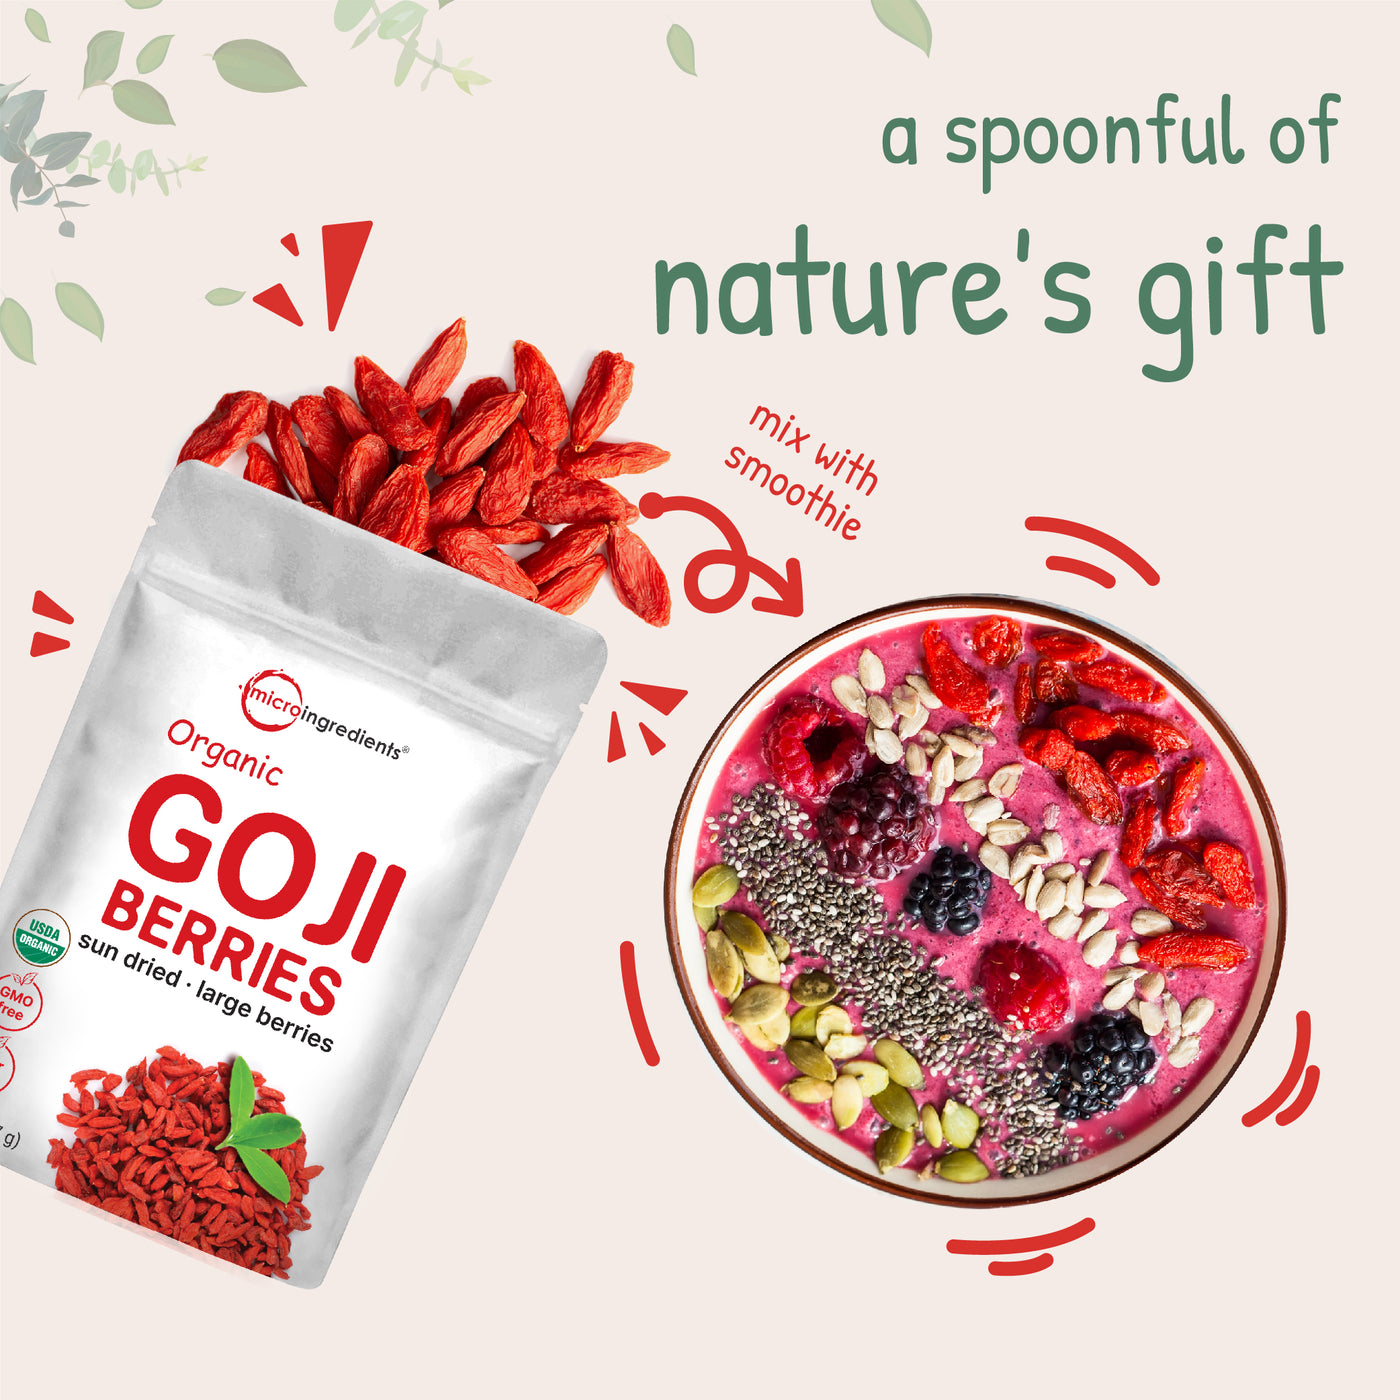 Fresh Organic Goji Berries Nature's gift